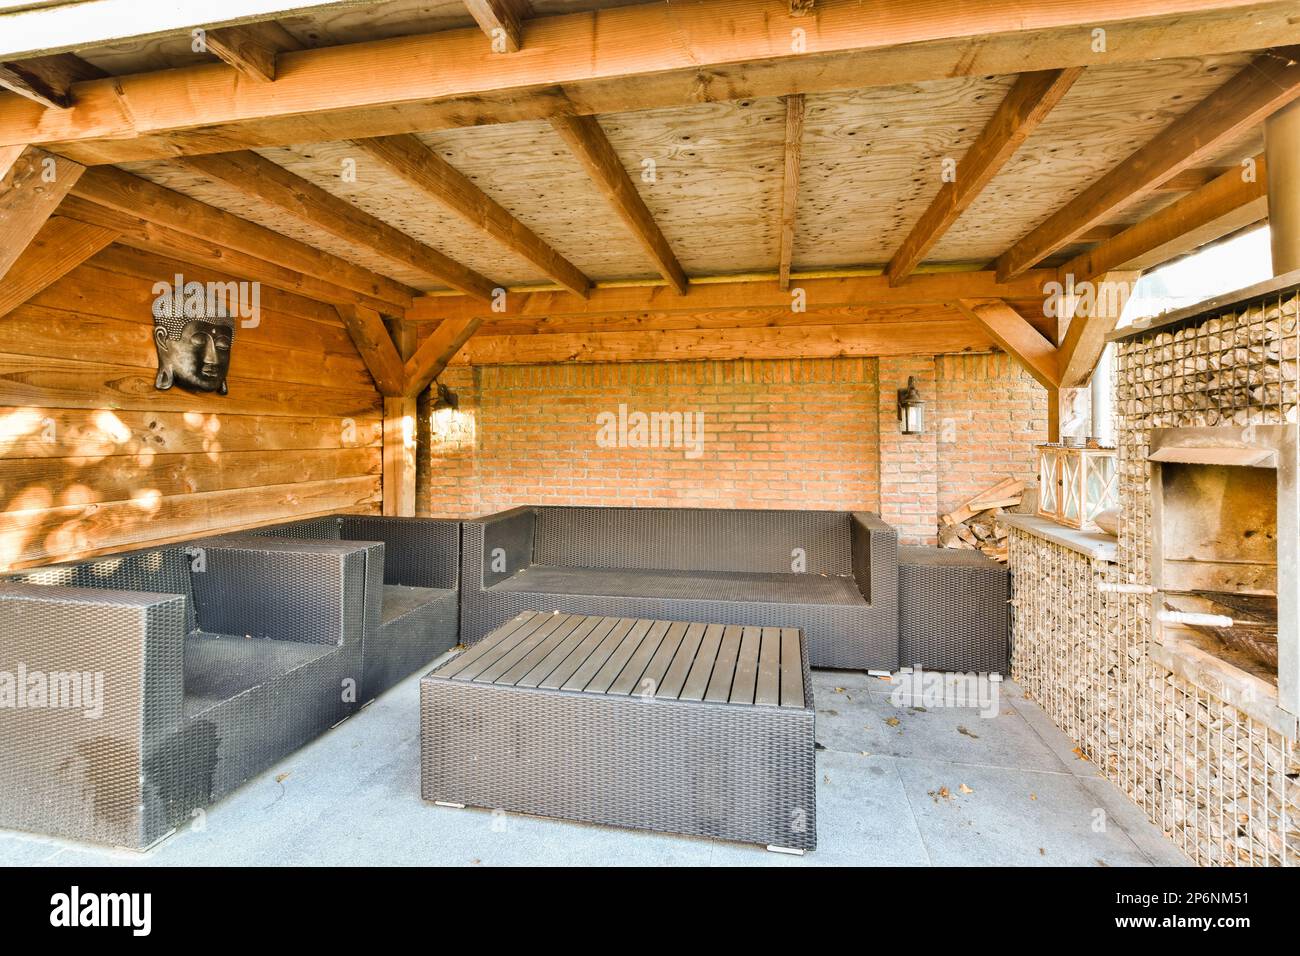 une cuisine extérieure avec des murs en briques et des poutres en bois au plafond, ainsi que des barbecues à utiliser Banque D'Images